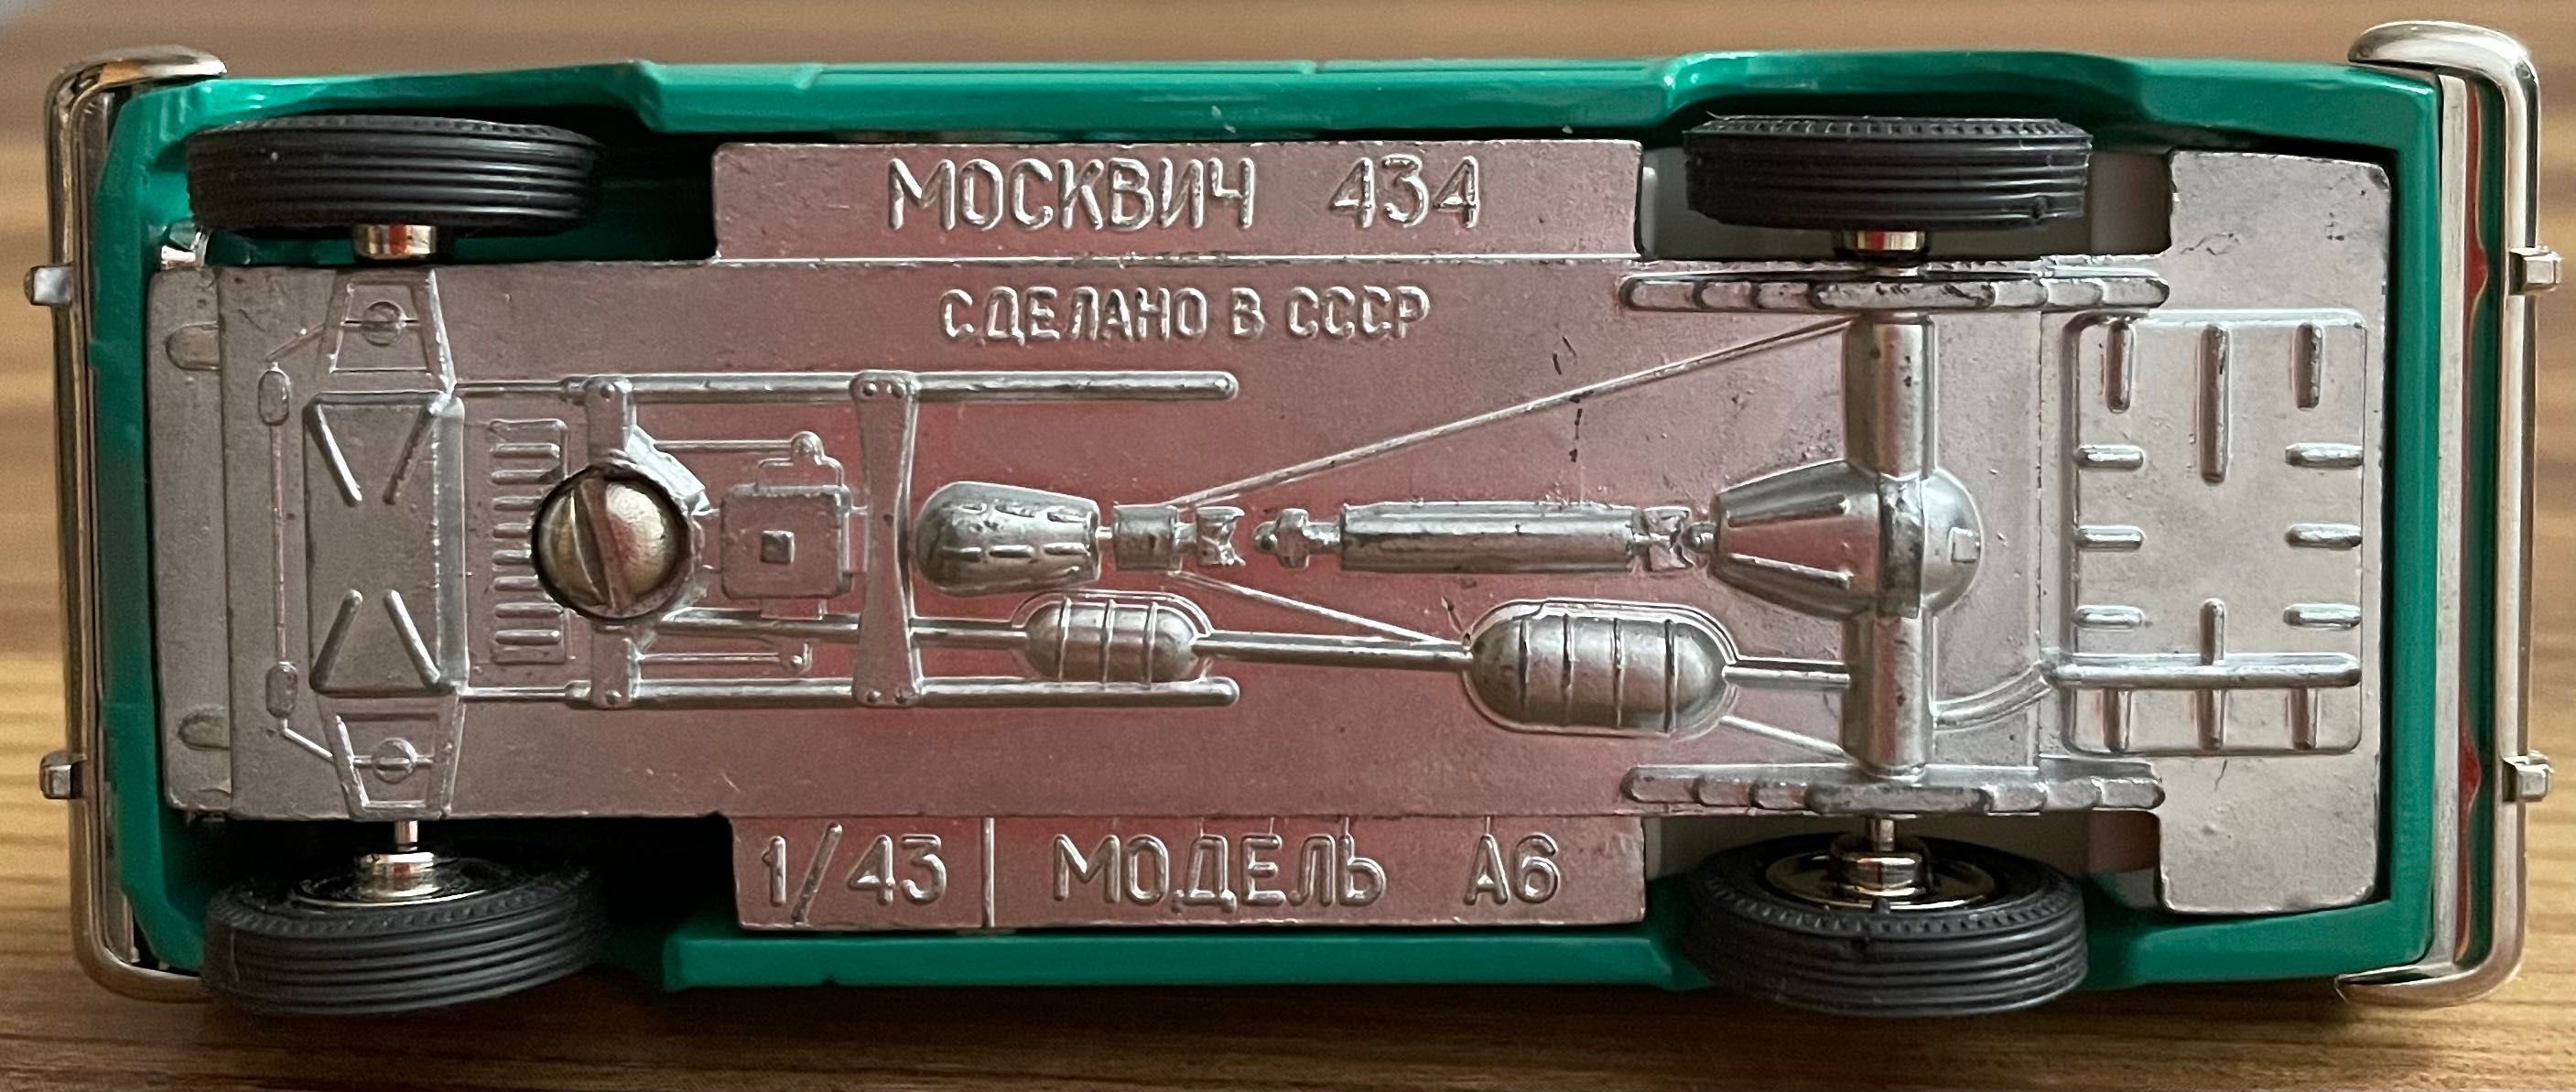 Москвич 434 Номерен А6 Мащаб 1:43 Сделано в СССР старо производство